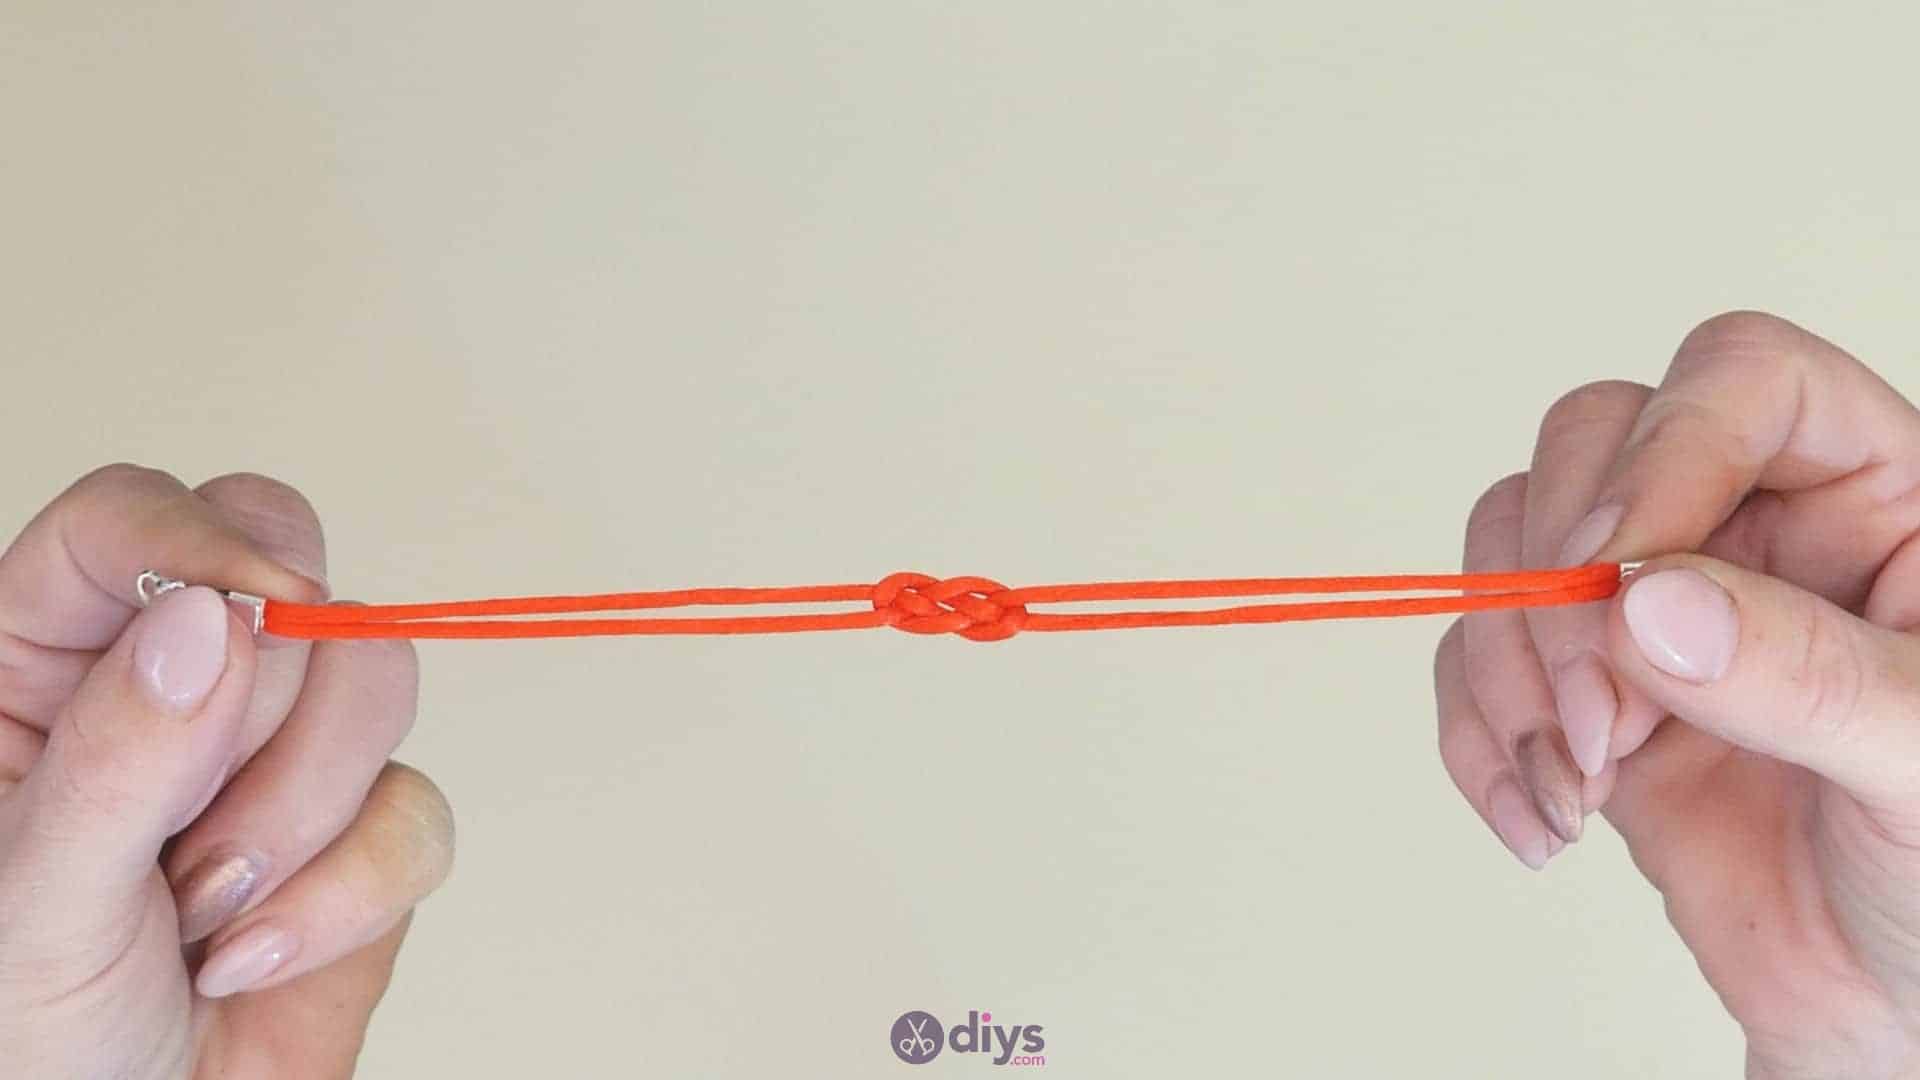 Diy knotted bracelet step 4c